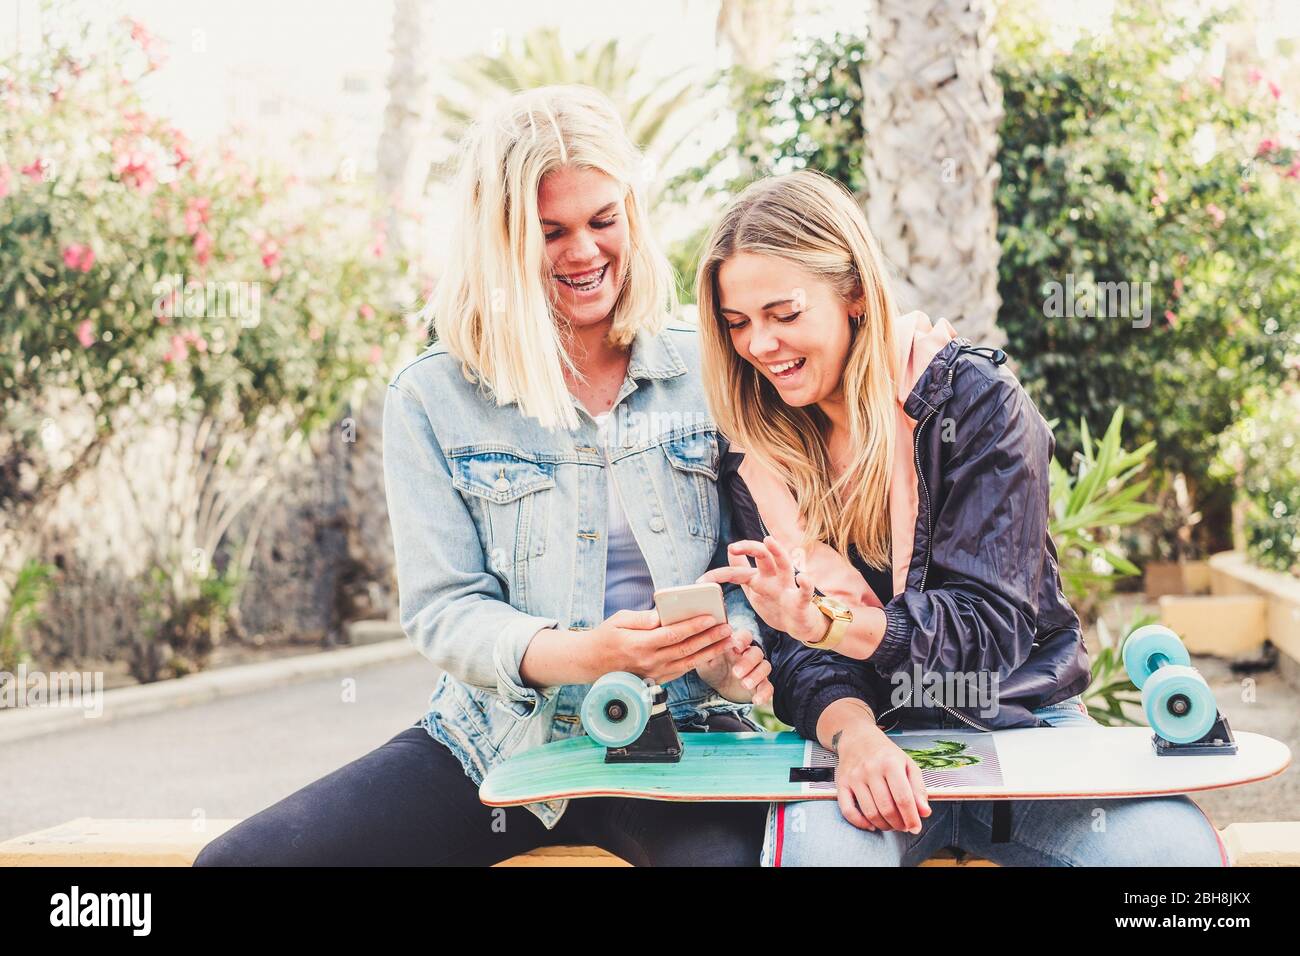 Un paio di amici che si divertono con la tecnologia e lo smartphone che si divertono in un parco - skateboard hipster e gente millenaria in amici insieme - ridere e sorridere ragazze bionde Foto Stock